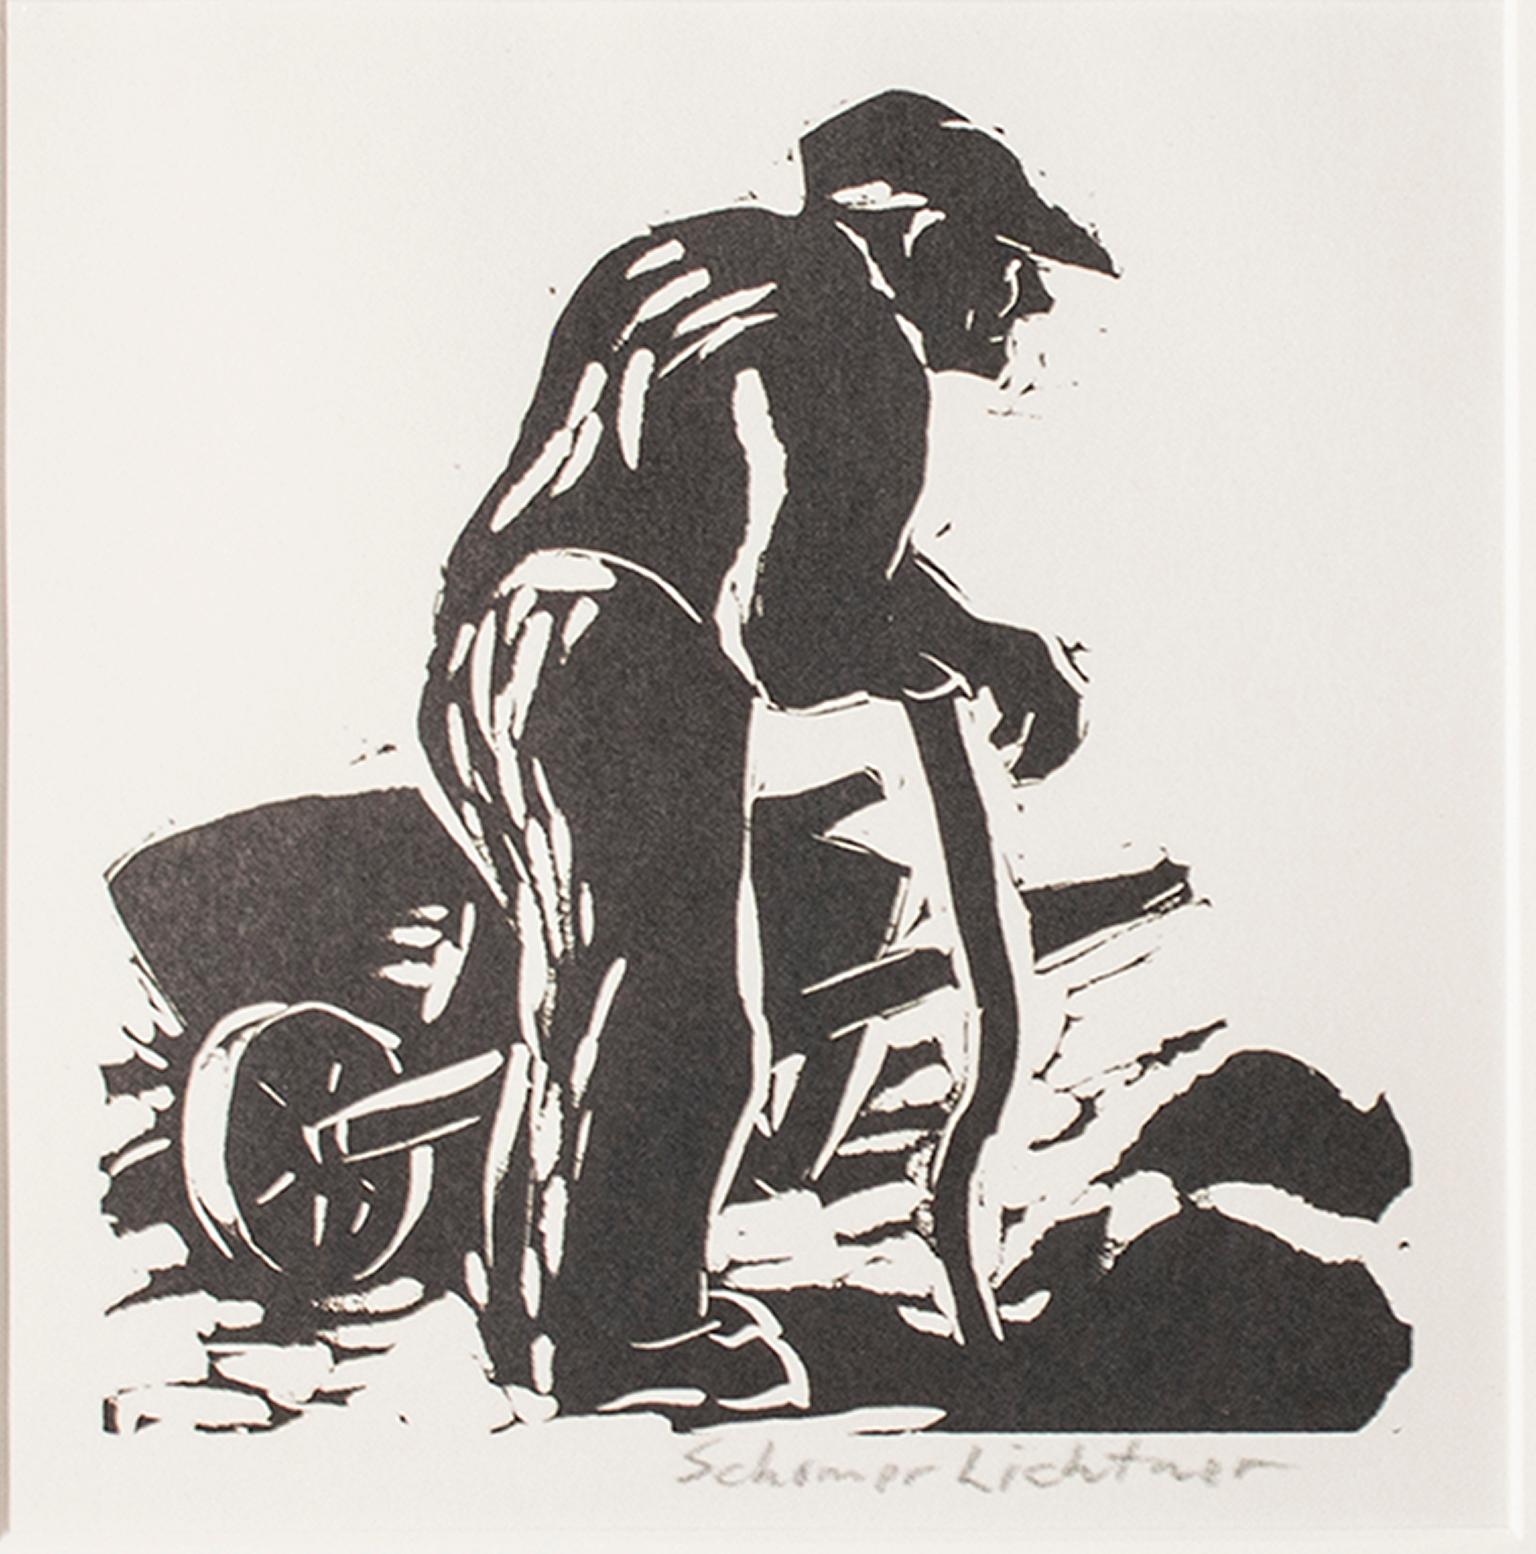 „“Rest“, Bauer mit dem Werkwerkzeug Linoleumschliff, signiert von Schomer Lichtner